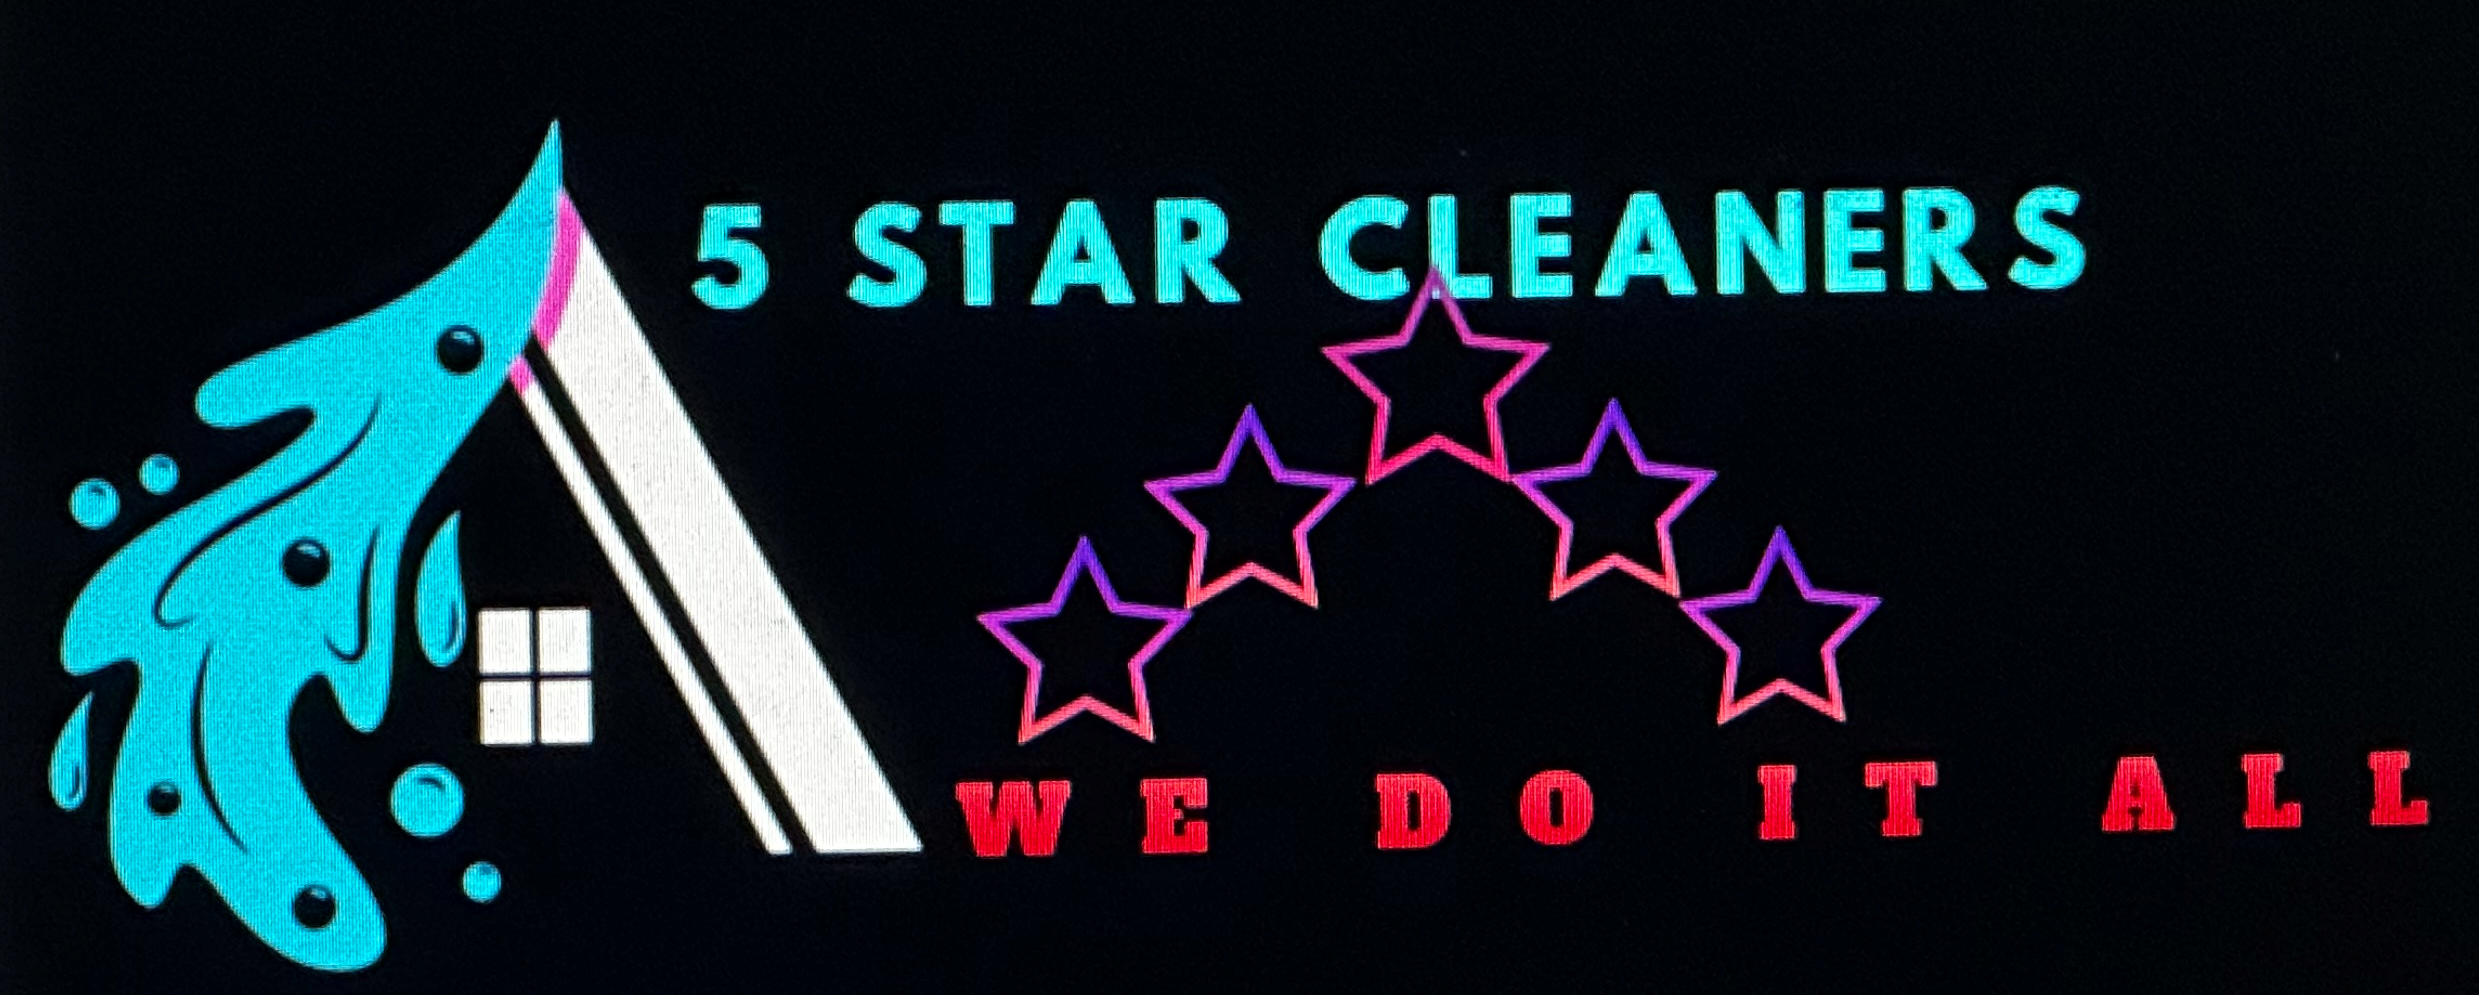 5 Star Cleaner Logo